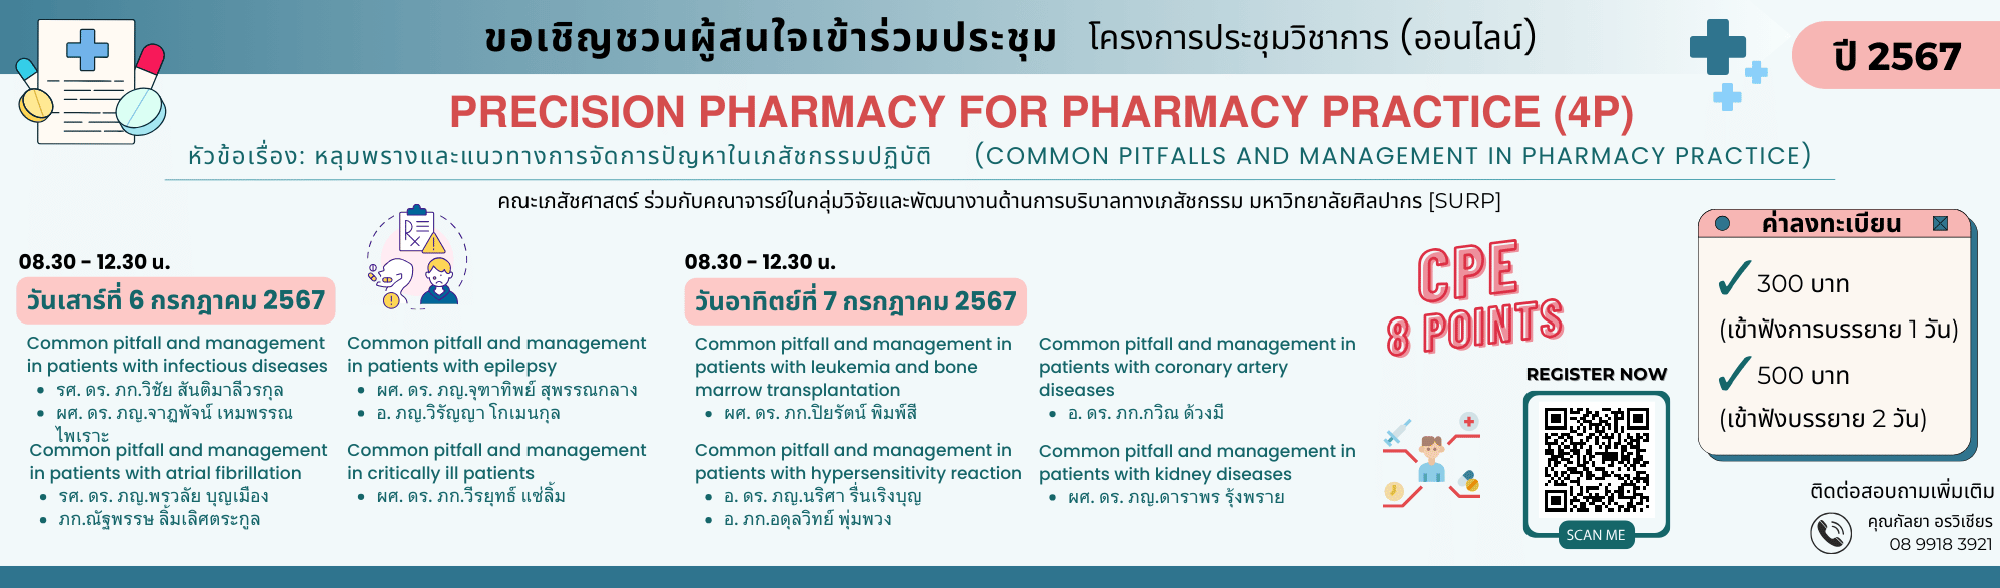 โครงการประชุมวิชาการ “Precision Pharmacy for Pharmacy Practice (4P)” ปี พ.ศ. 2567 จัดแบบออนไลน์ หัวข้อเรื่อง “หลุมพรางและแนวทางการจัดการปัญหาในเภสัชกรรมปฏิบัติ (Common pitfalls and management in pharm